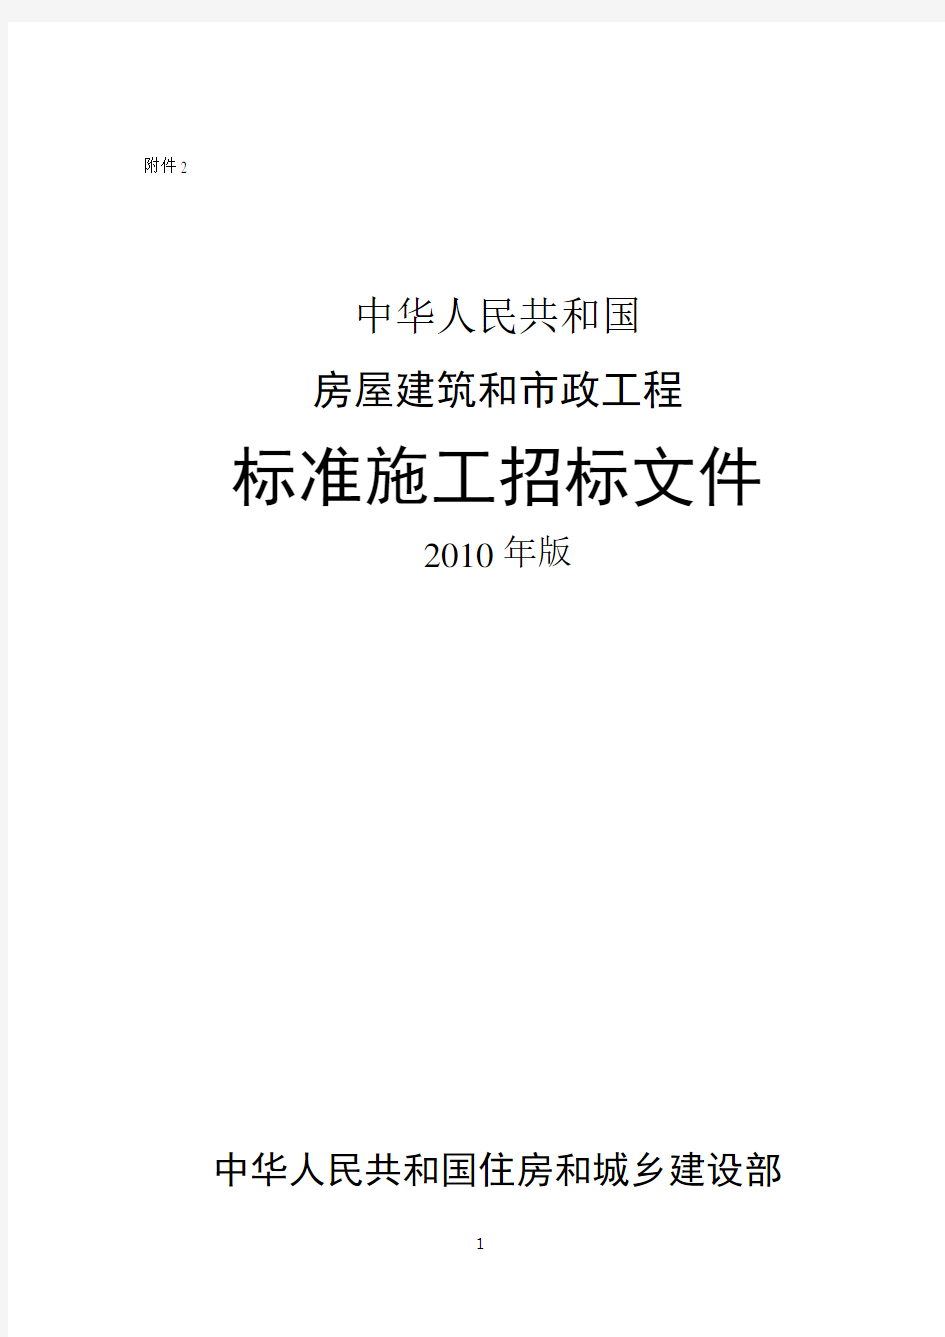 中华人民共和国房屋建筑和市政工程标准施工招标文件2010年版